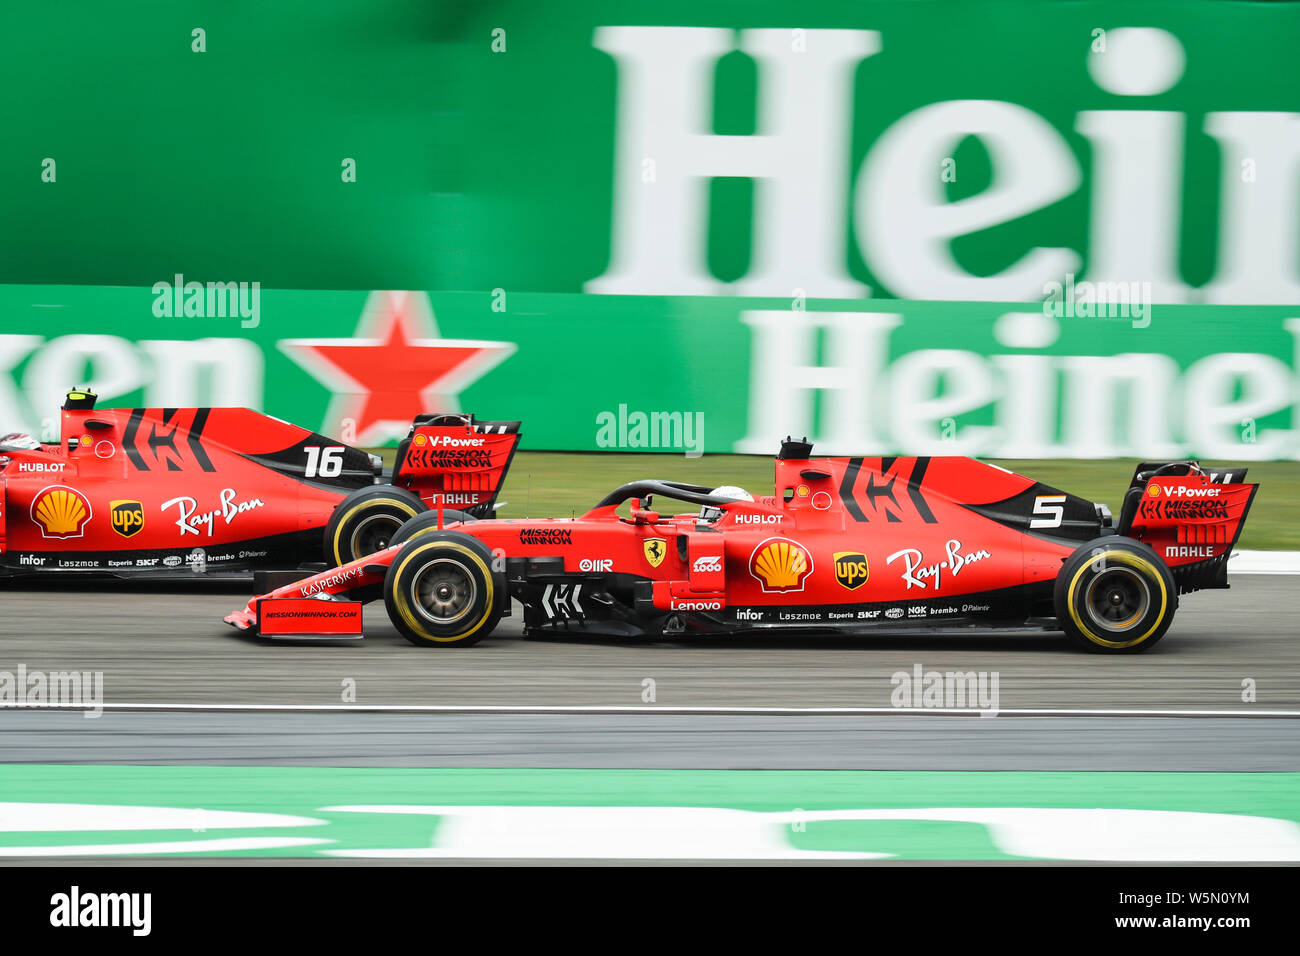 Pilote automobile monégasque Charles Leclerc, à gauche, et l'allemand Sebastian Vettel, pilote de course de la Scuderia Ferrari en compétition au cours de la Heineken Formule 1 Banque D'Images